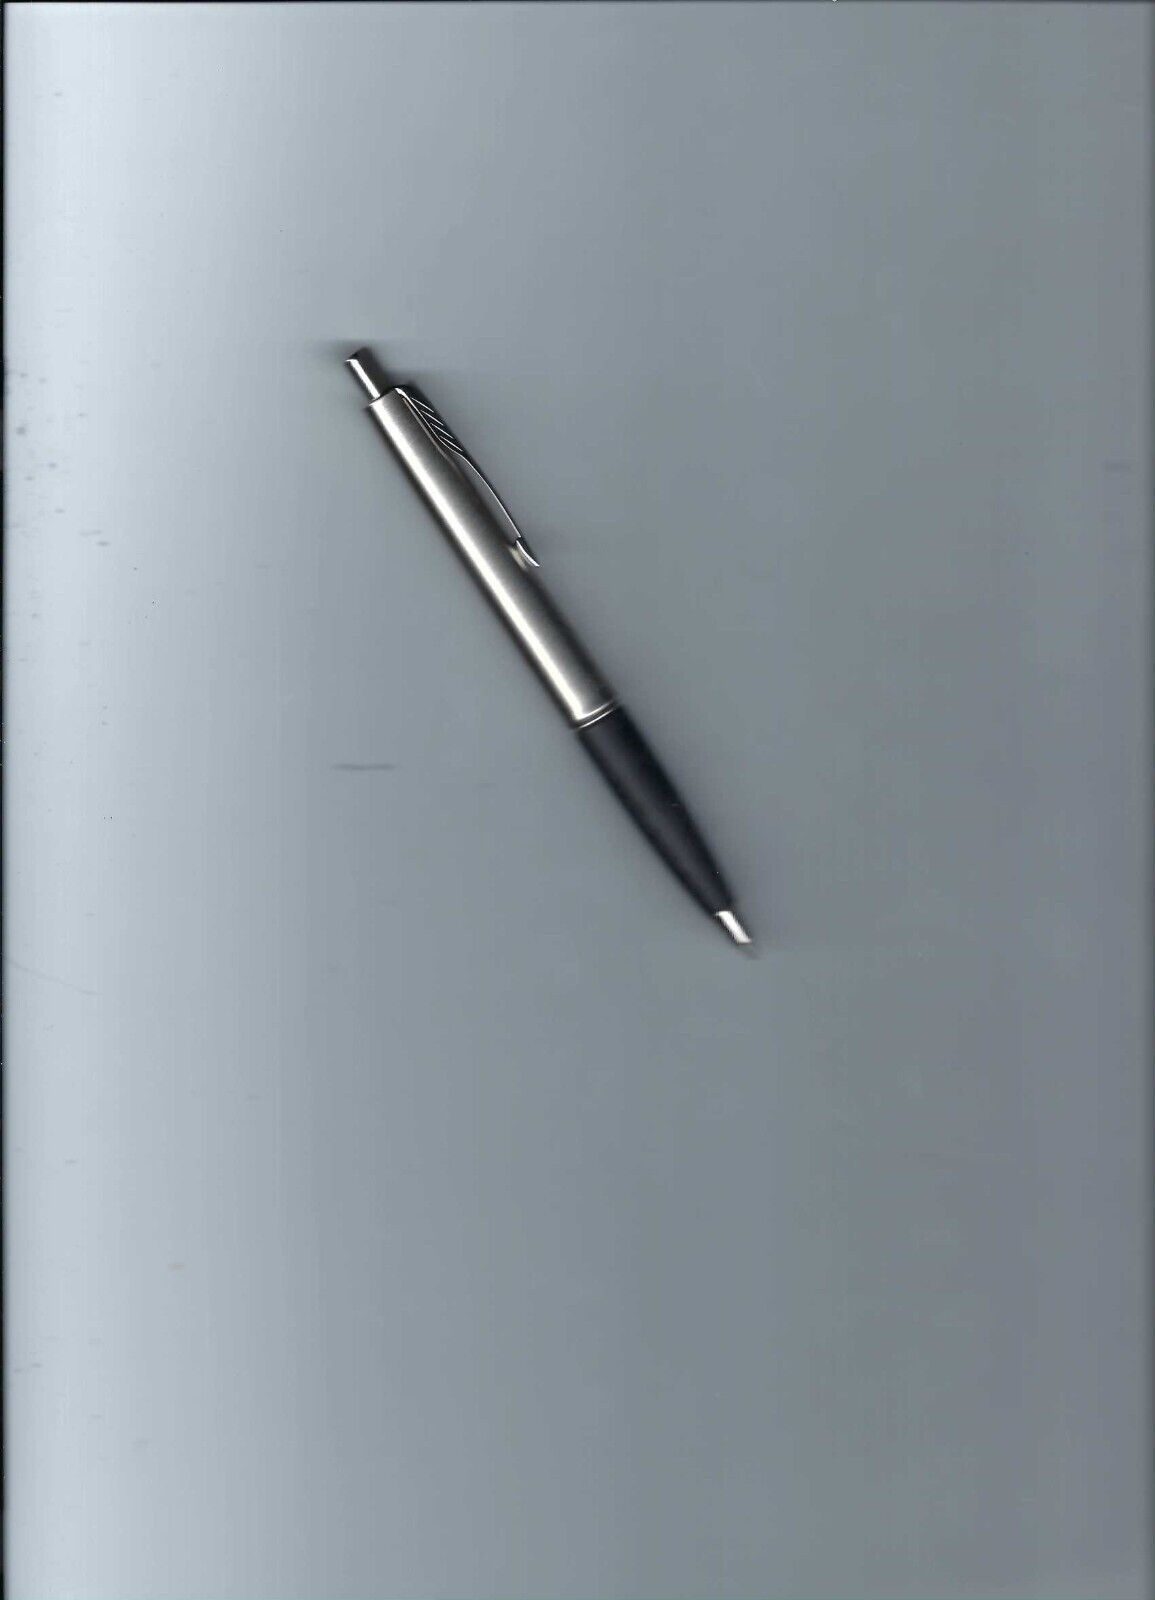 Vtg Parker Stainless Steel Frontier Ball Point Pen W/Chrome  & Black Rubber Grip